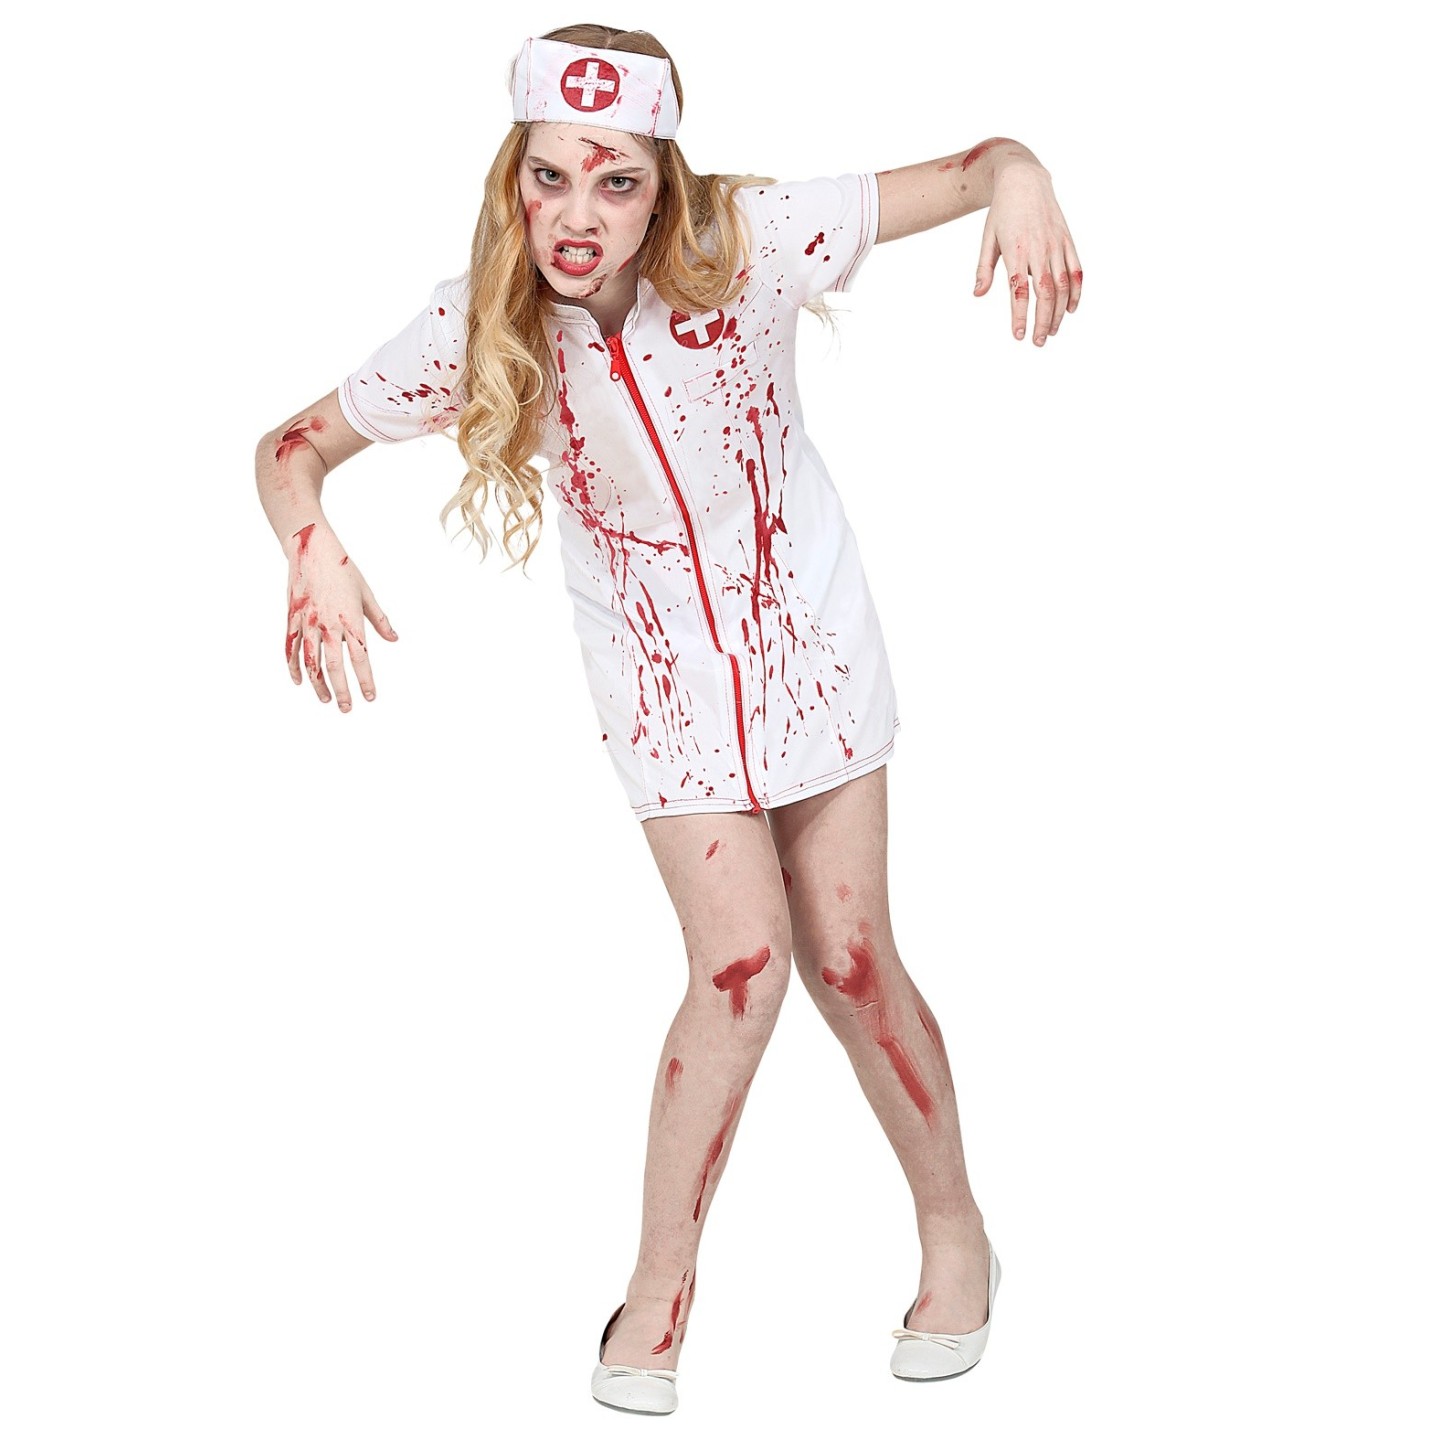 Kan worden genegeerd incompleet Lijkt op Zombie verpleegster pakje kind | Jokershop.be - Halloween kleding